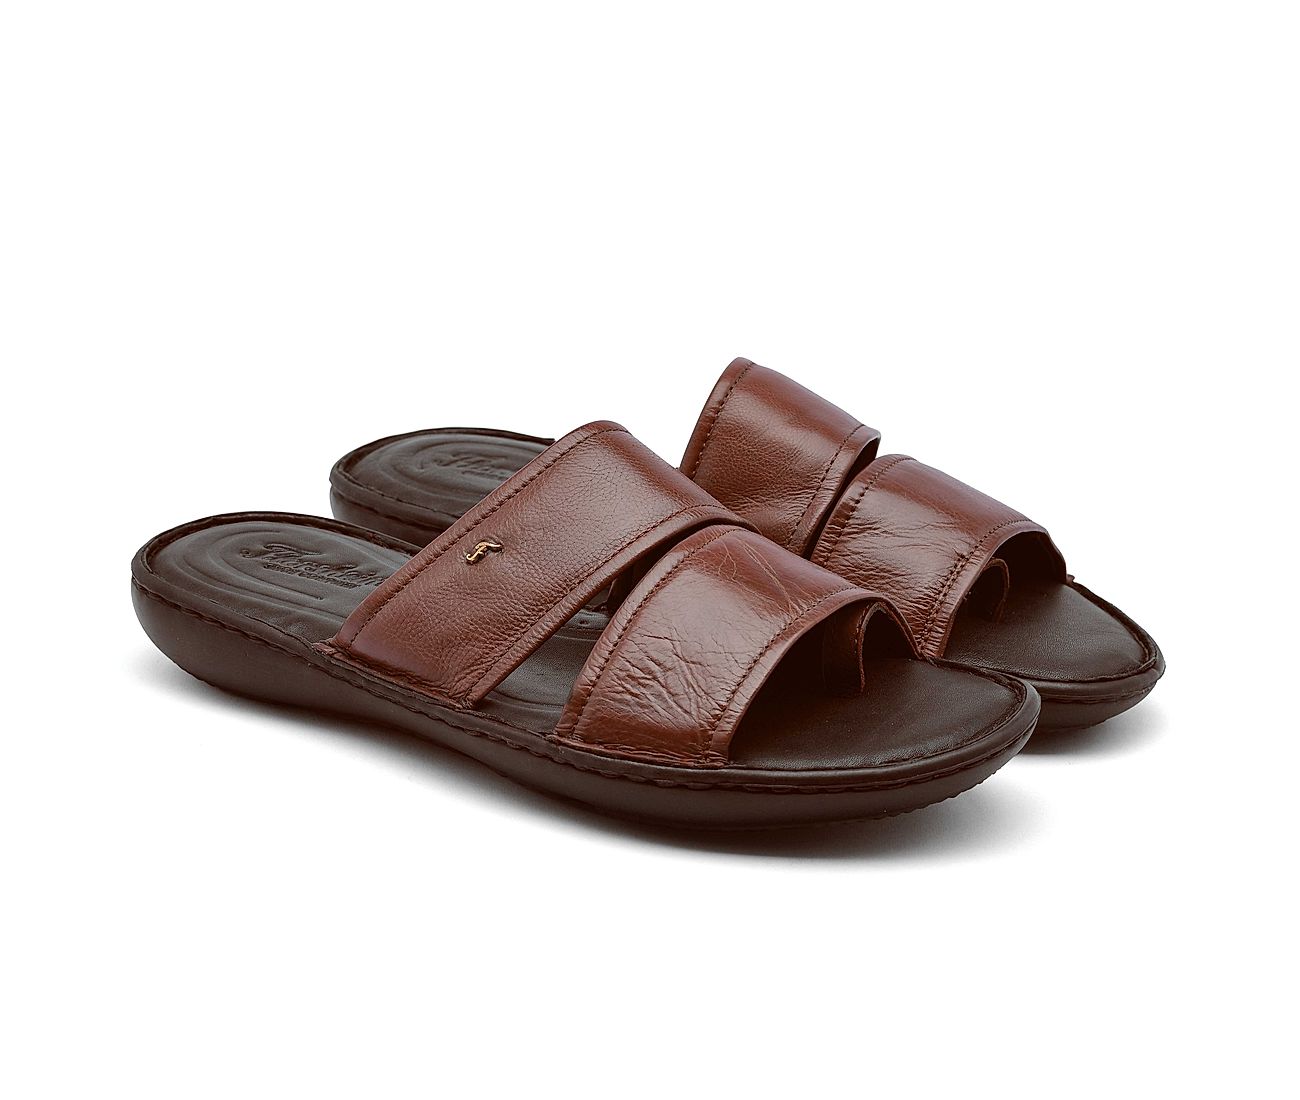 Strappy Men Leather Sandals, Greek Summer Men Shoes, Men Flats - Etsy